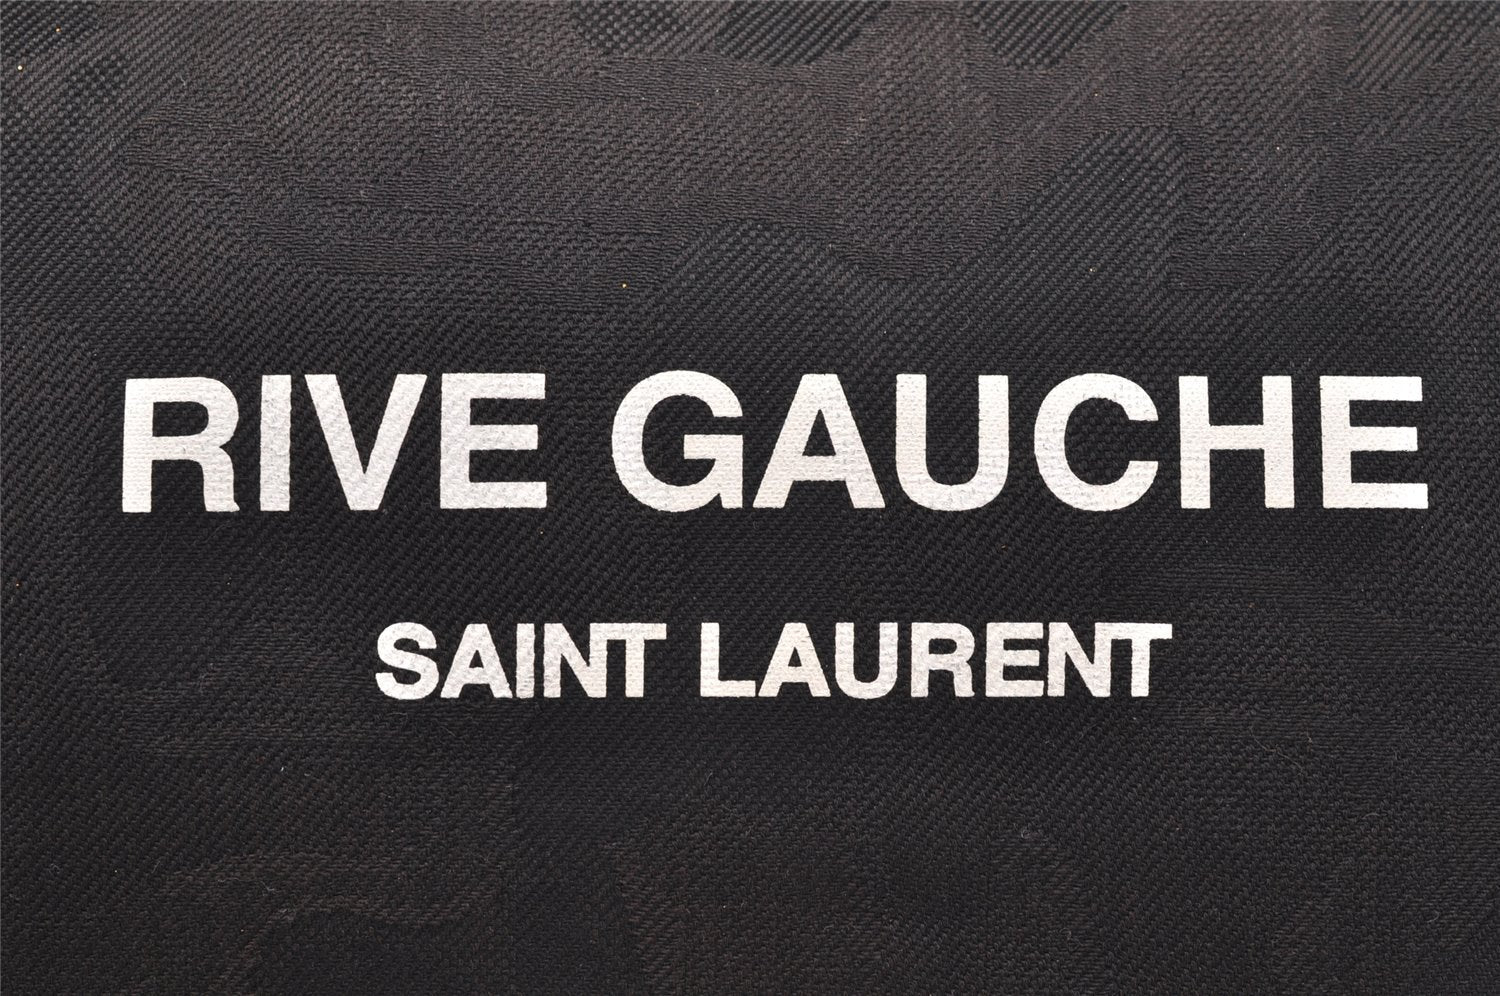 Authentic SAINT LAURENT RIVE GAUCHE Clutch Bag Canvas Leather 581369 Black 2854I